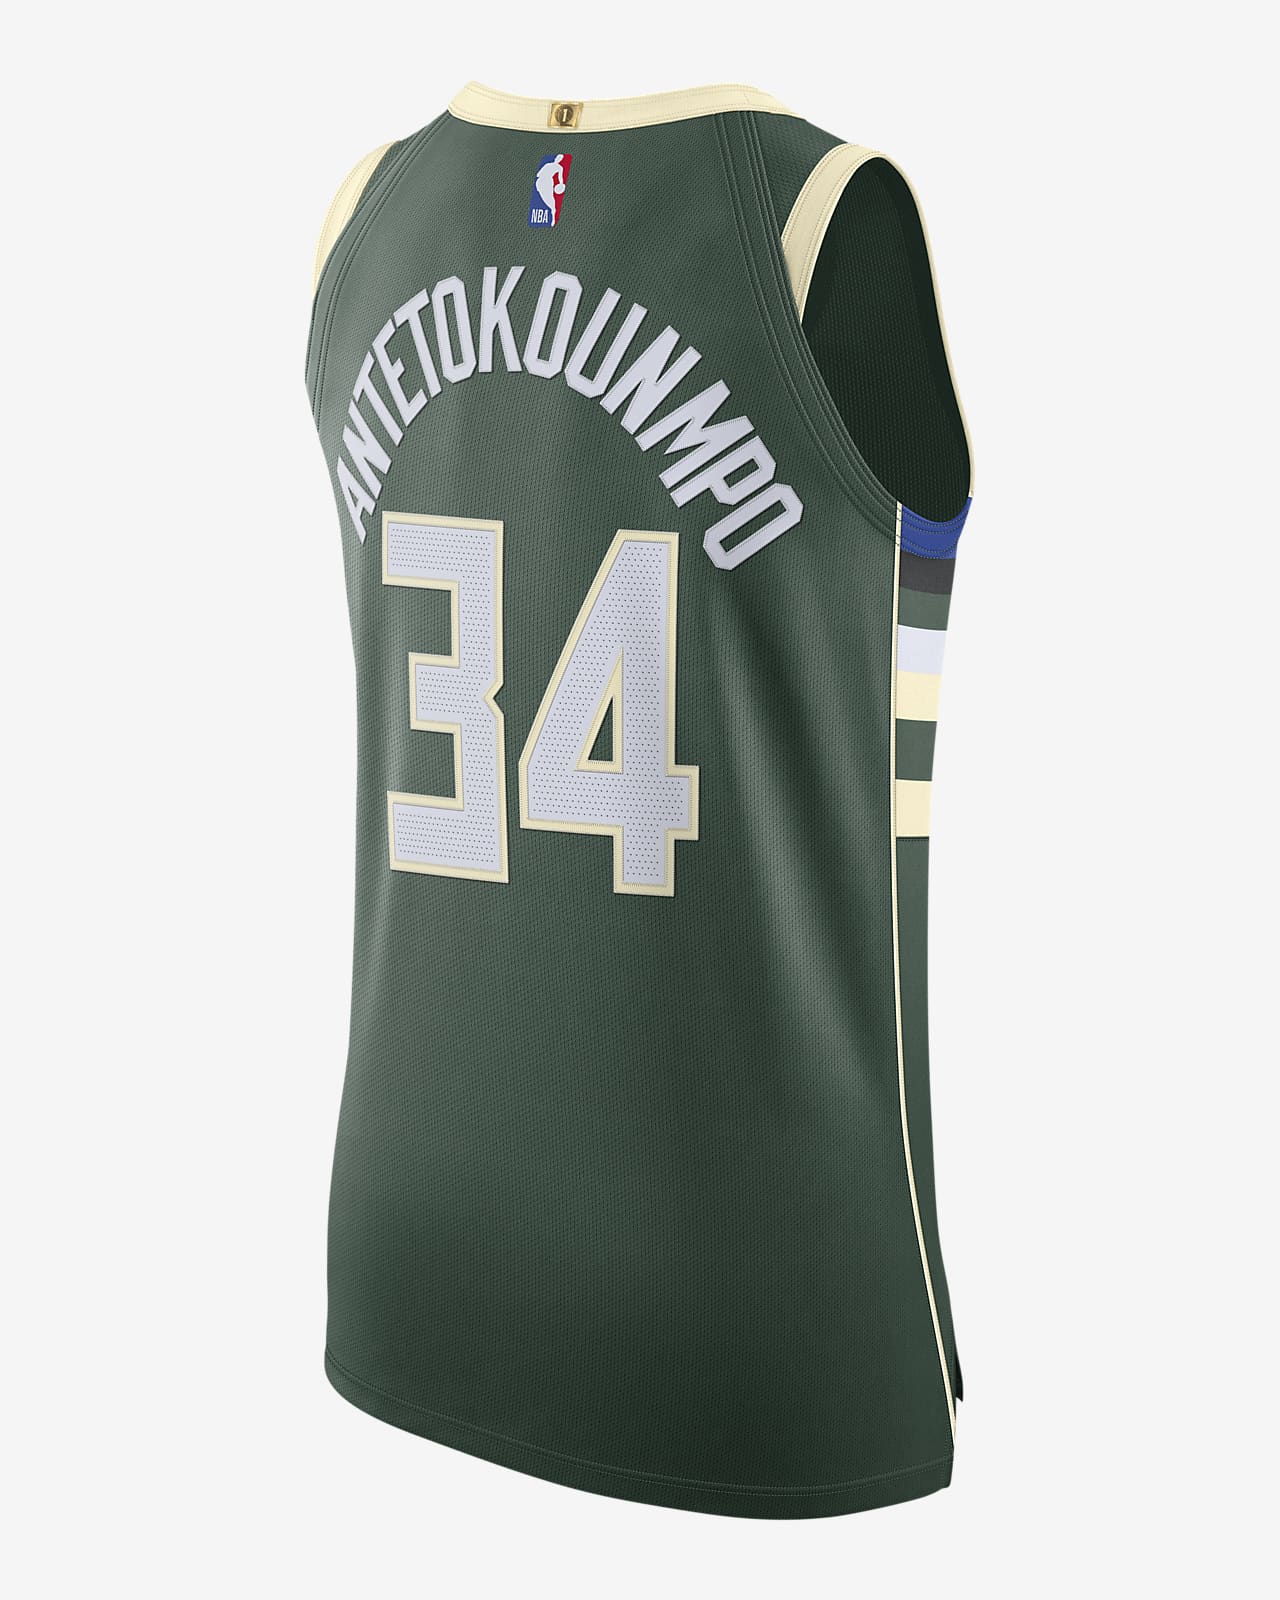 Giannis Antetokounmpo Bucks Icon Edition 2020 Nike NBA Authentic Jersey.  Nike IL